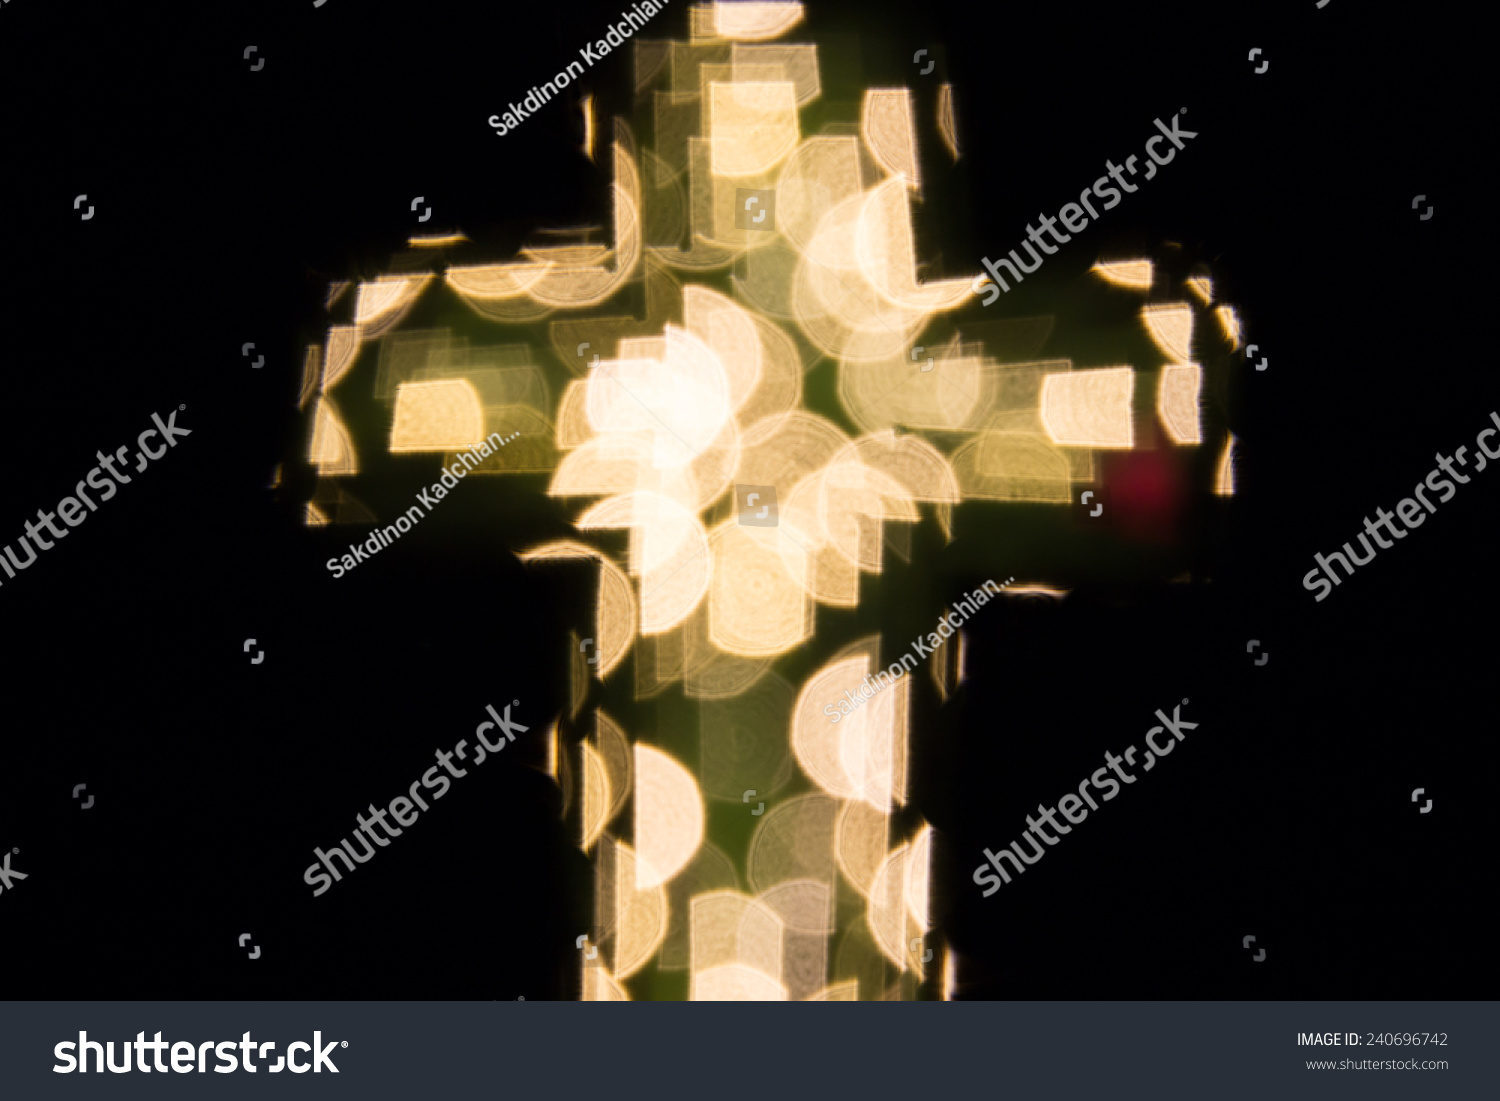 Christian Cross Bokeh Light Background Stock Photo 240696742 - Shutterstock